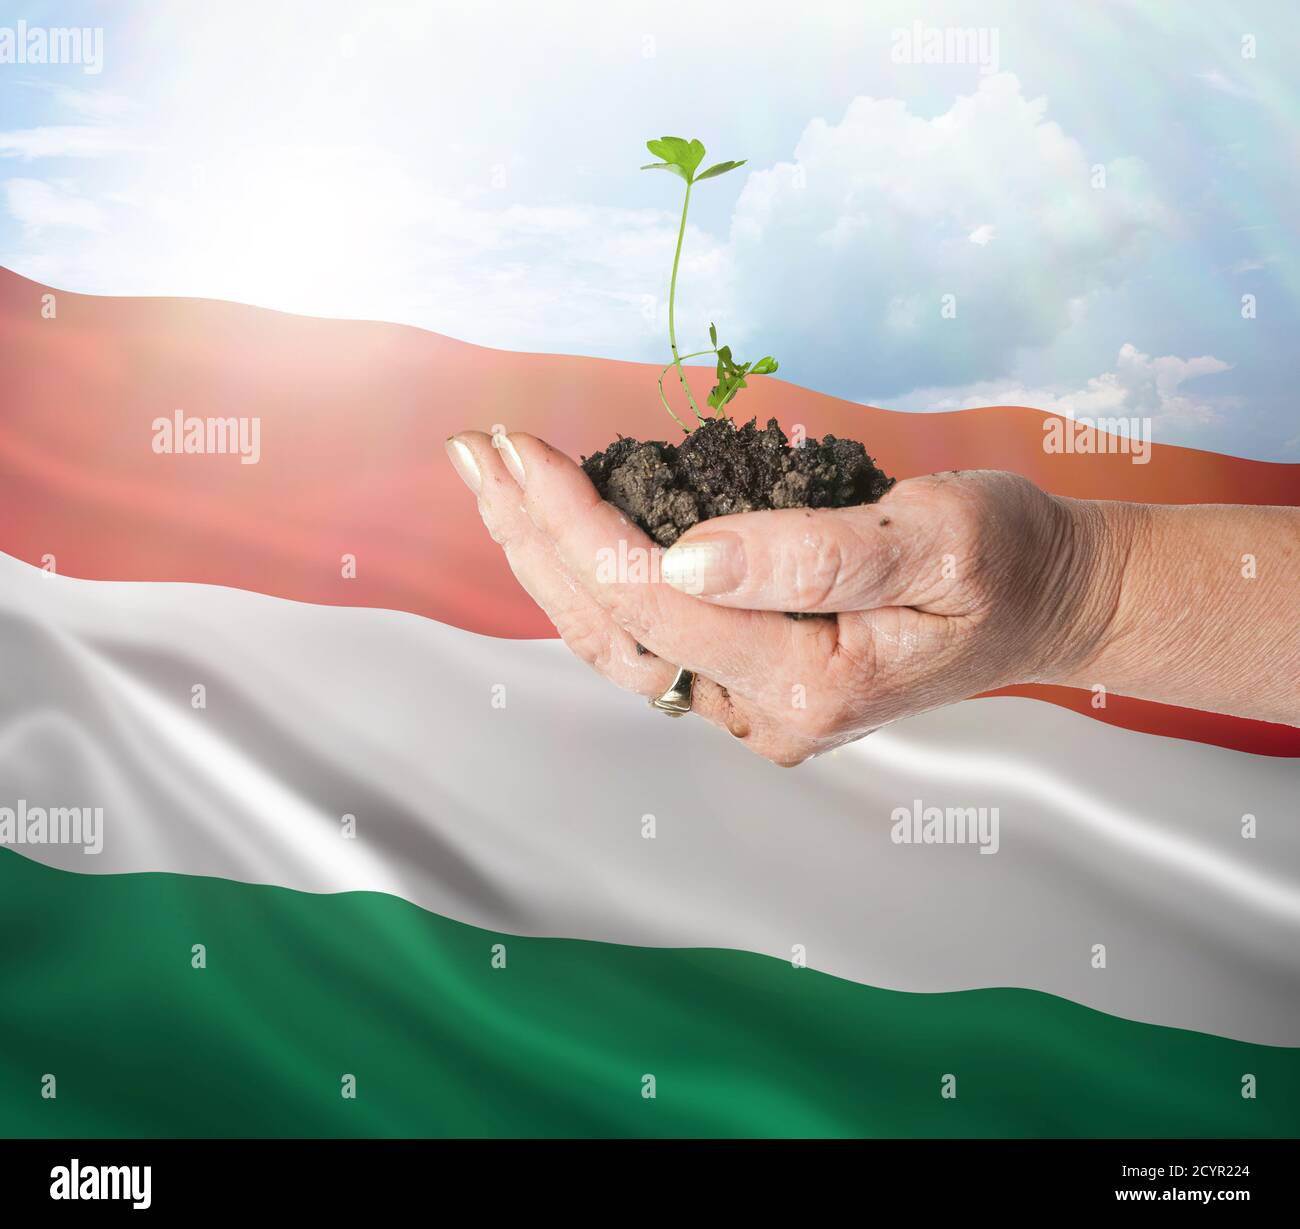 Hungría crecimiento y nuevo comienzo. Concepto de energía renovable verde y ecología. Mano sosteniendo planta joven. Foto de stock